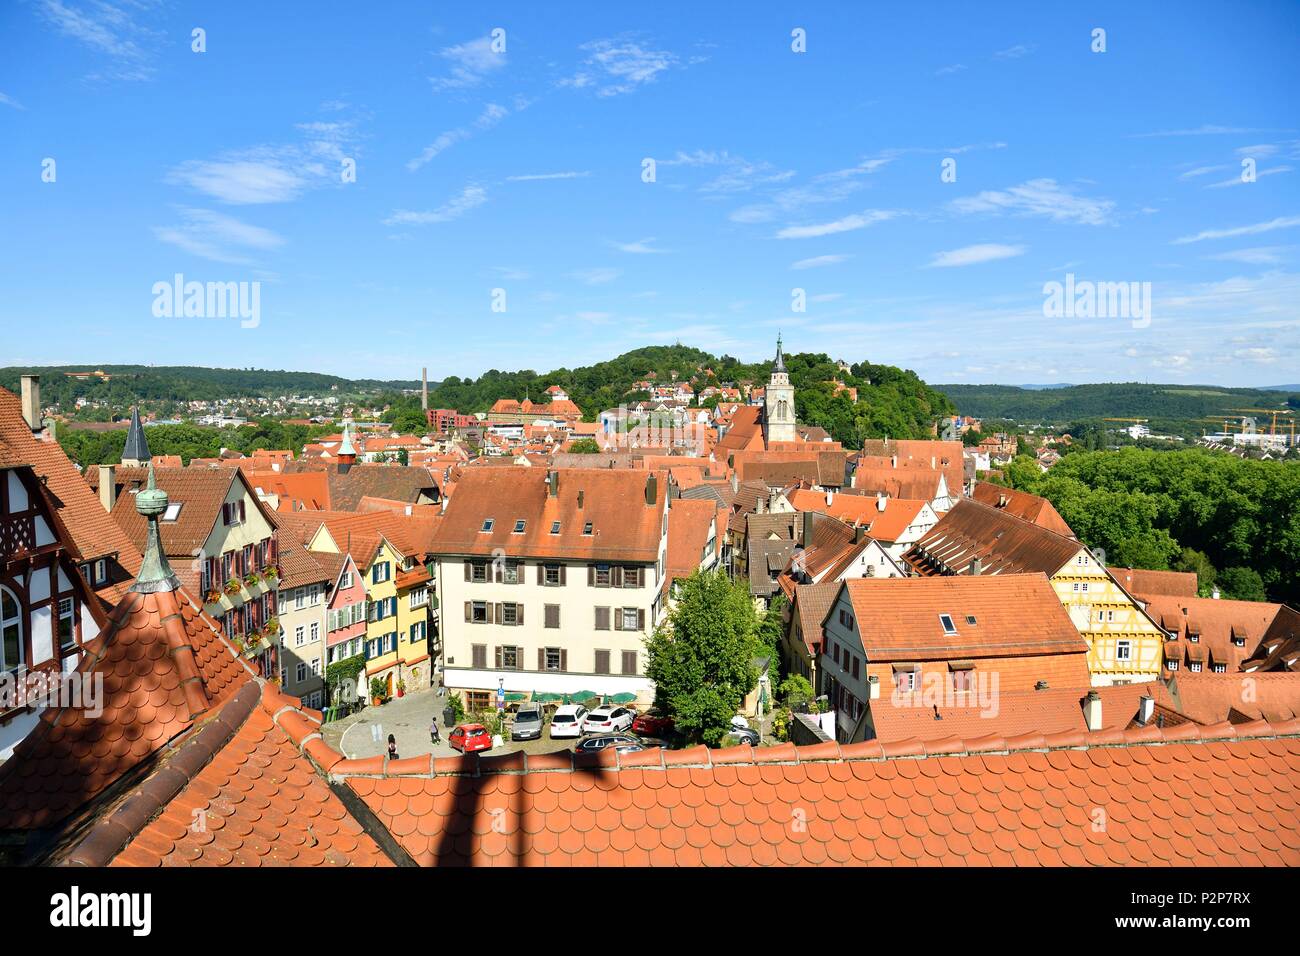 Germany, Baden-Wurttemberg, Neckartal (Neckar valley), Tübingen Stock Photo